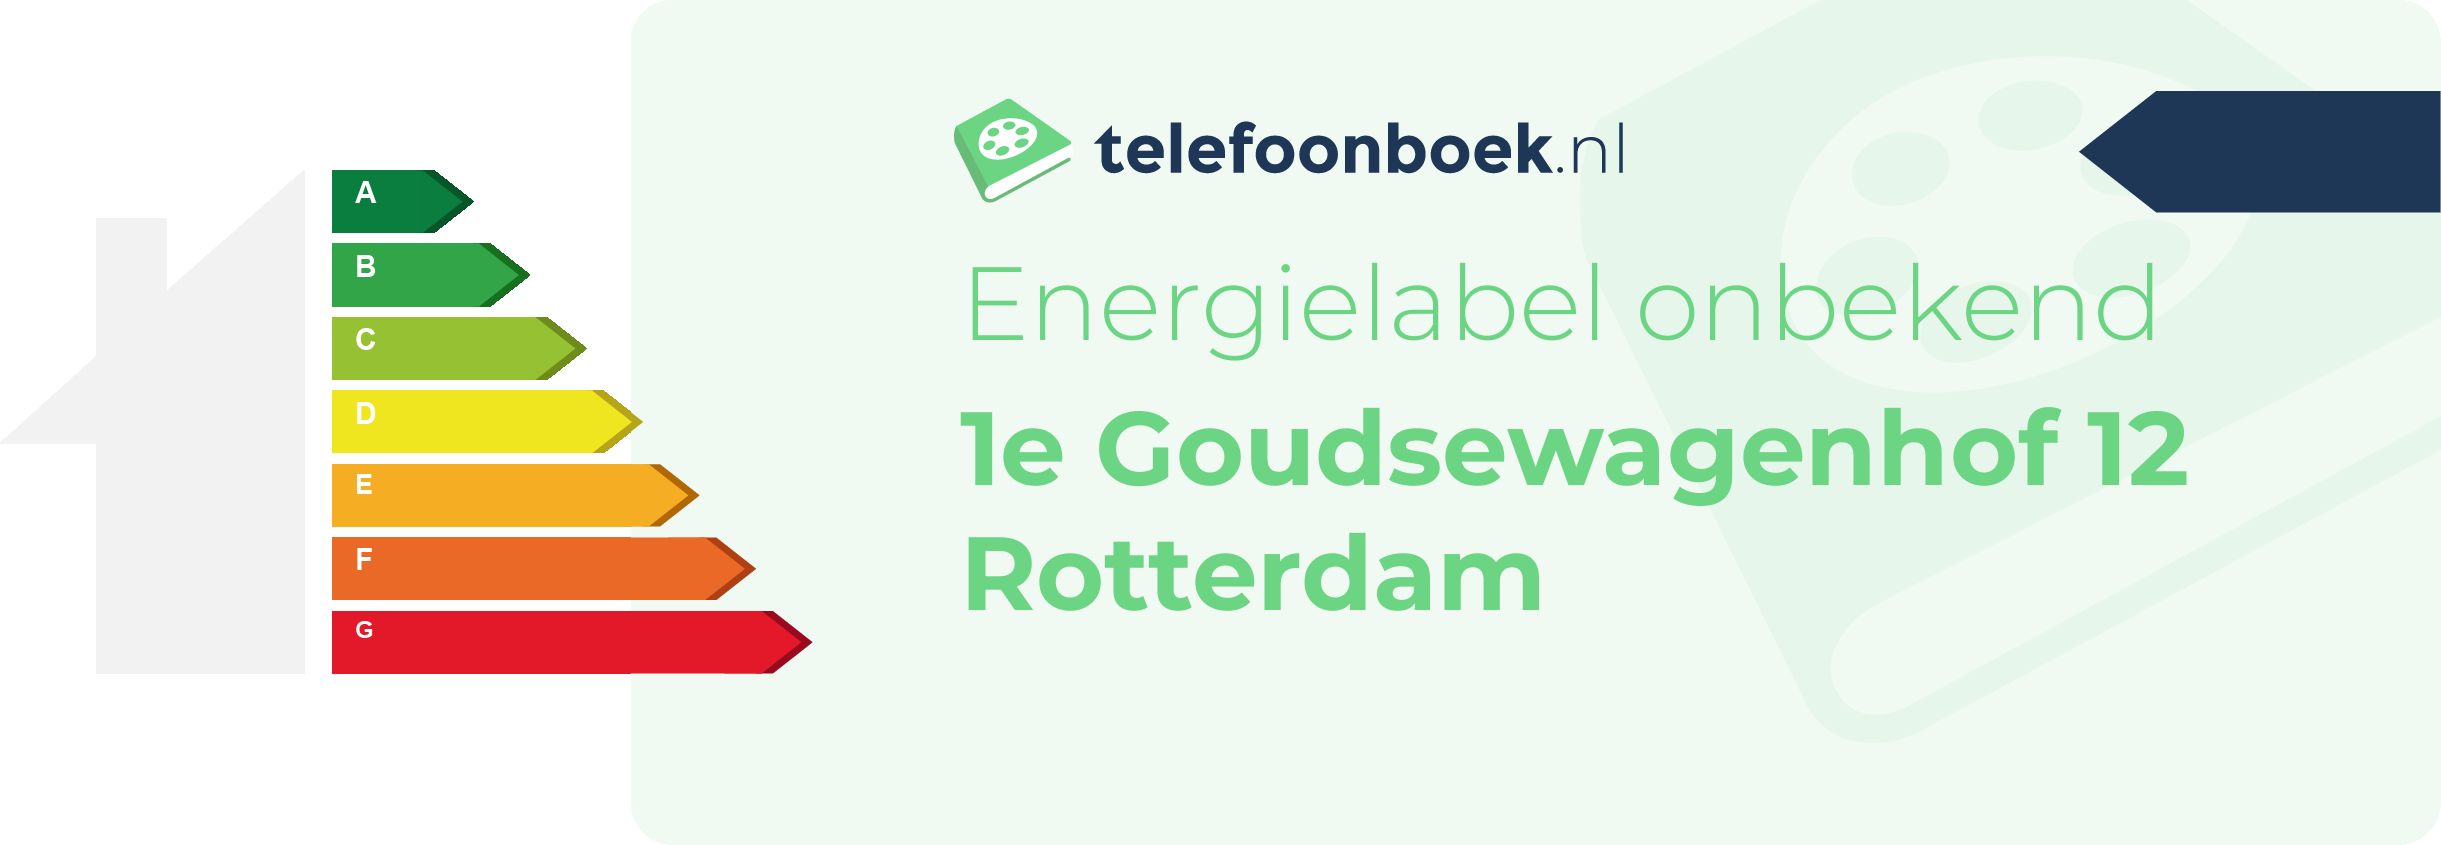 Energielabel 1e Goudsewagenhof 12 Rotterdam